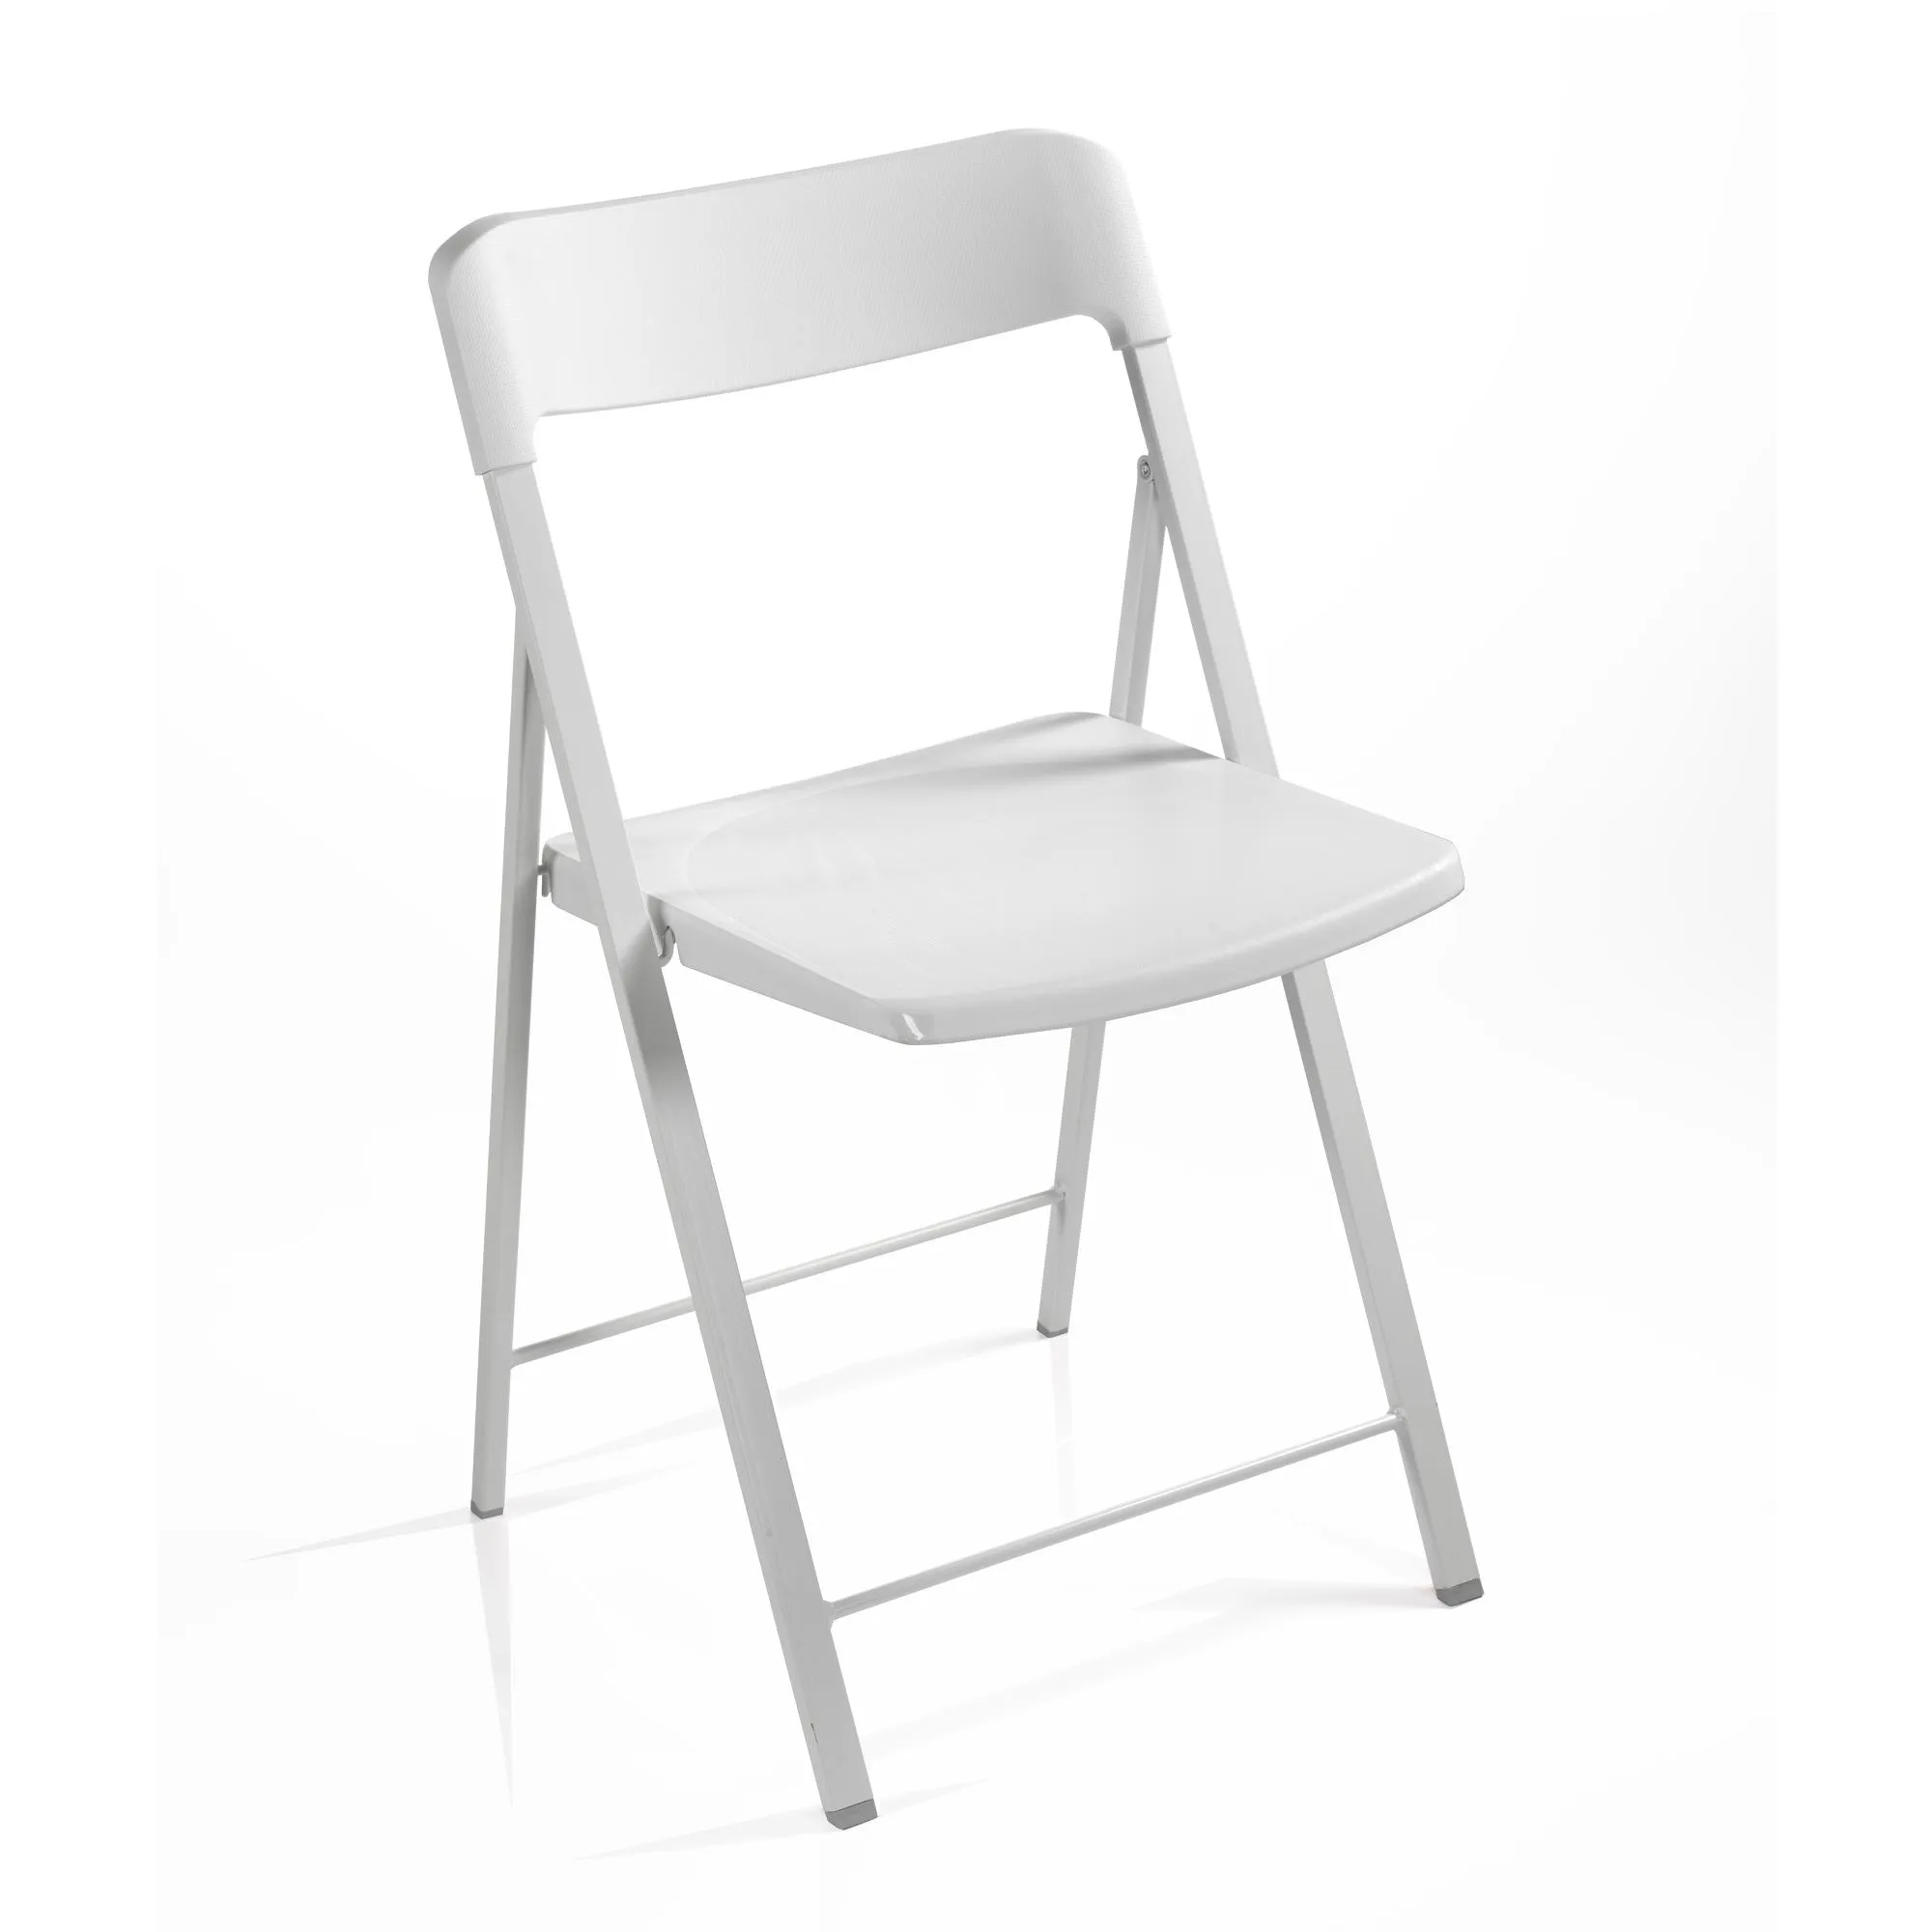 Sedia pieghevole richiudibile ZETA con struttura Alluminio verniciata bianca . chiusa ingombra solo 5 cm seduta e schienale in plastica Bianco